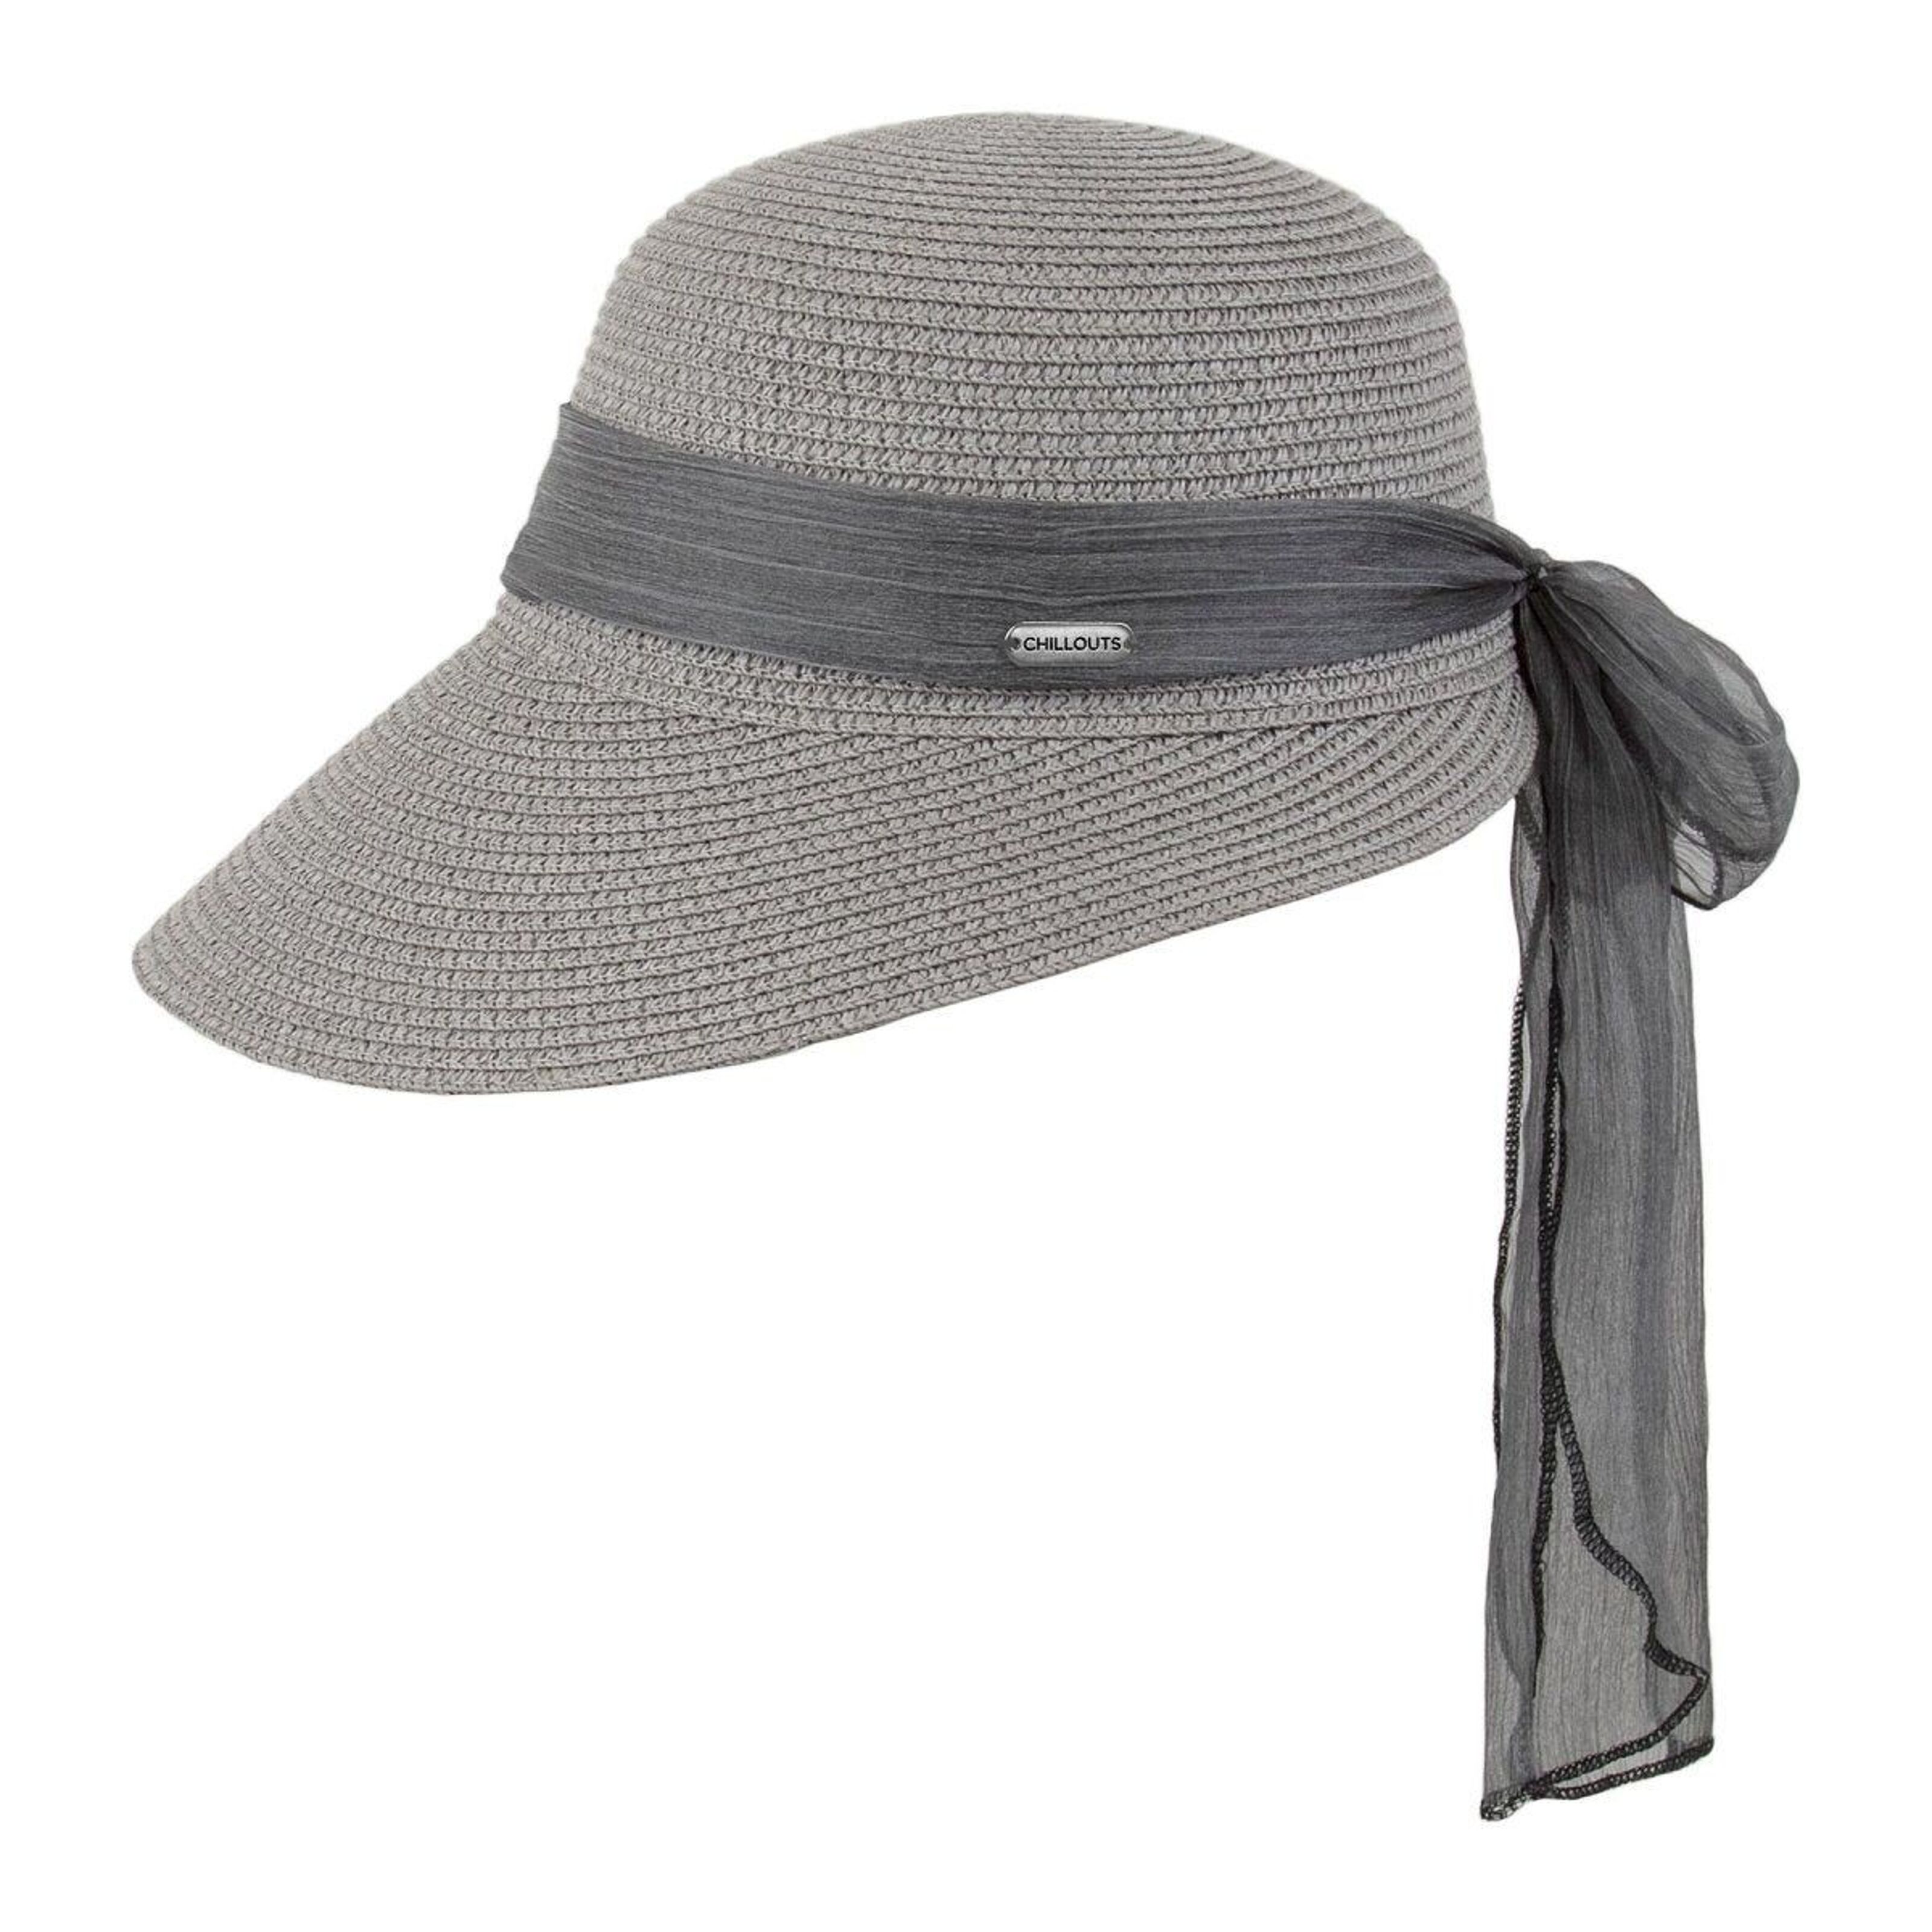 Summer wholesale Hat Lafayette Buy hat) hat (sun